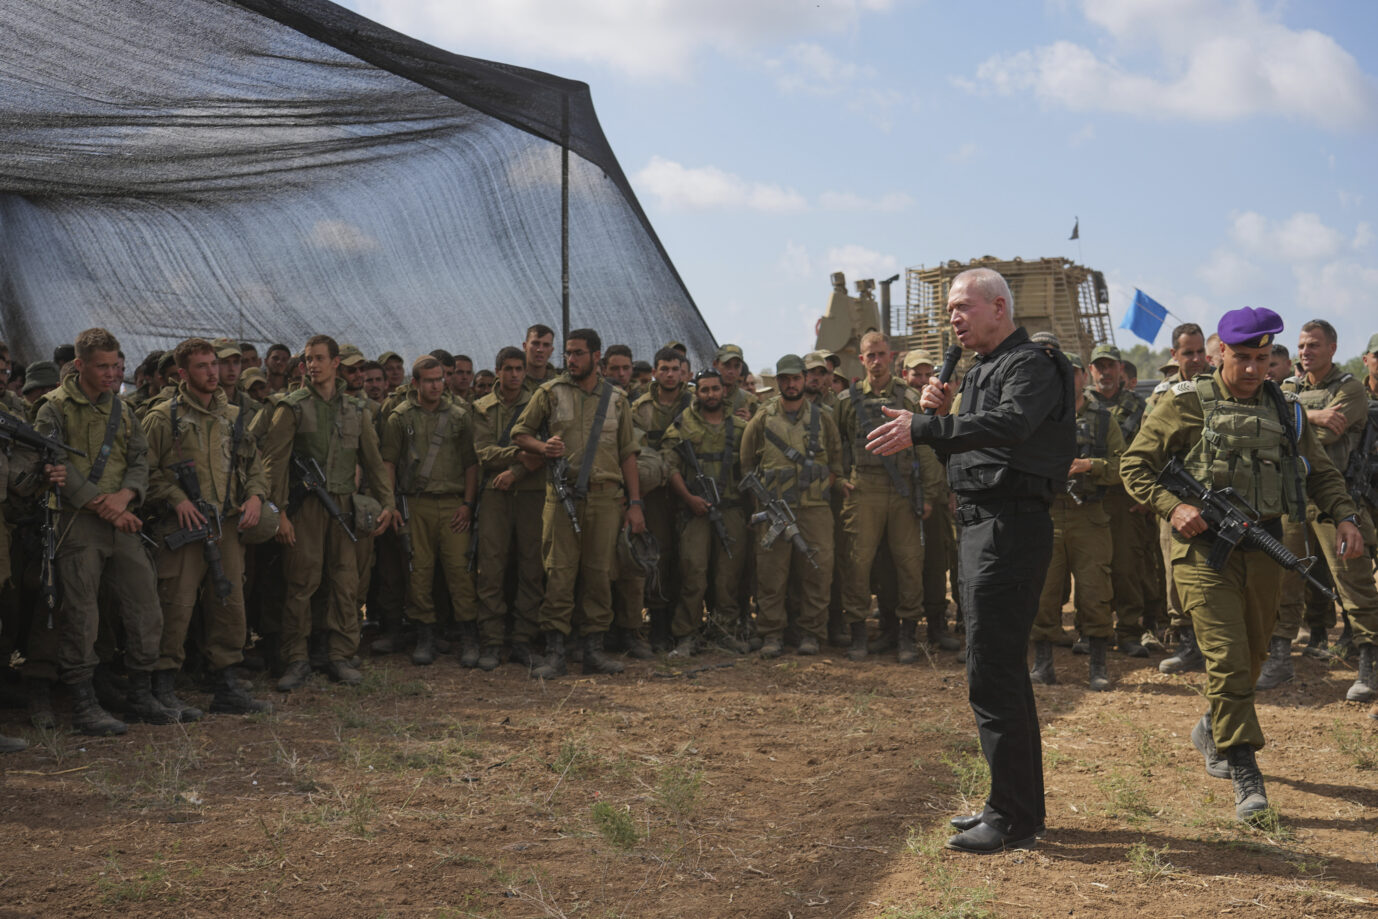 Auf dem Bild spricht Israels Verteidigungsminister zu seinen Soldaten. (Themenbild)